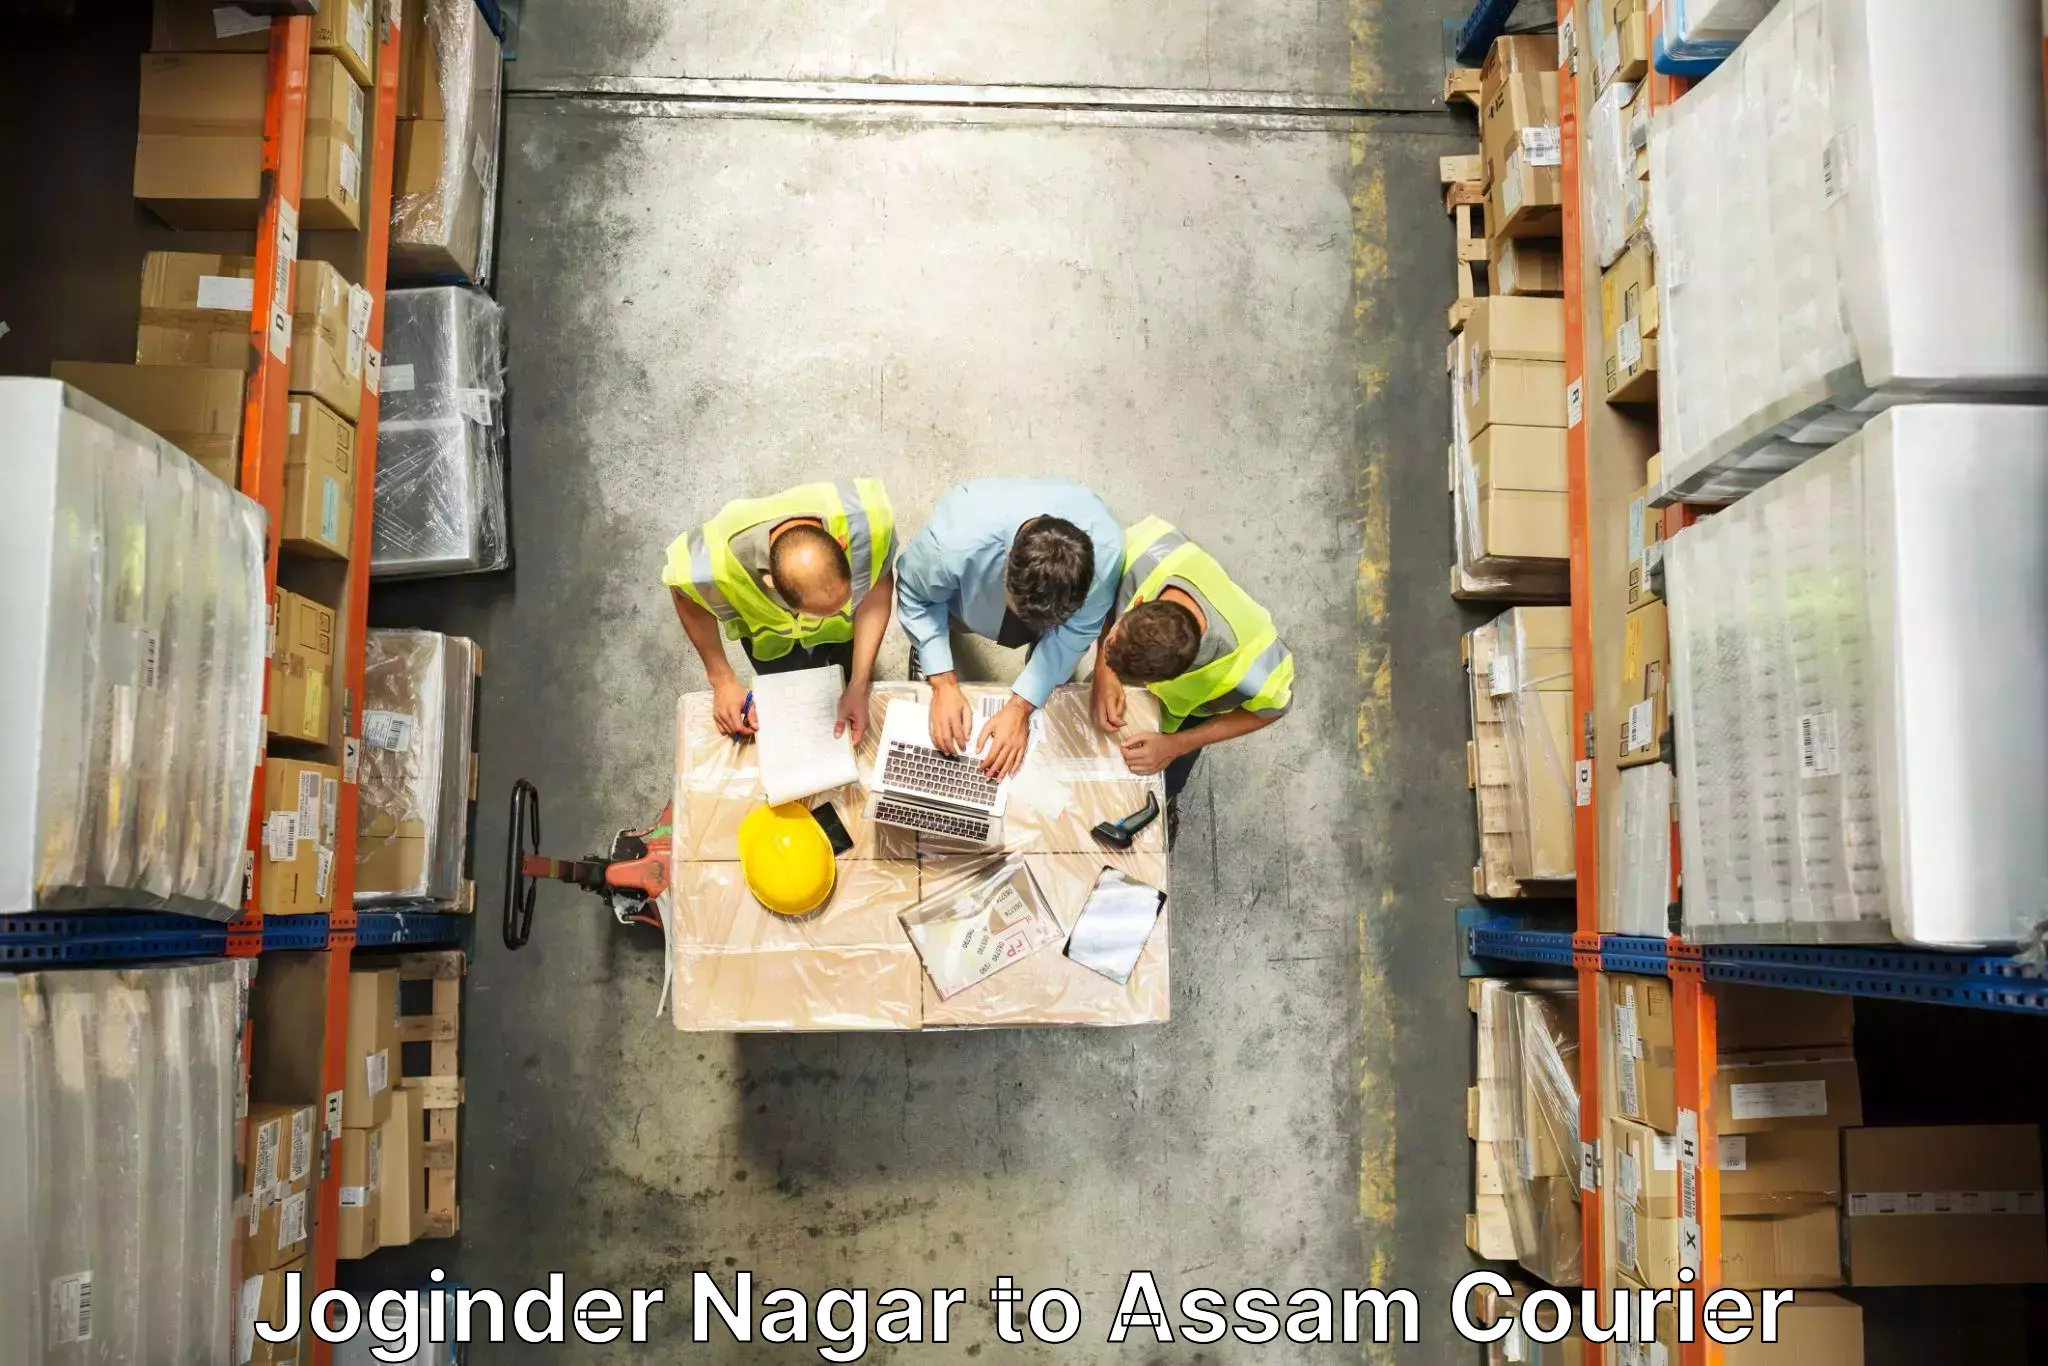 Furniture transport service Joginder Nagar to Assam